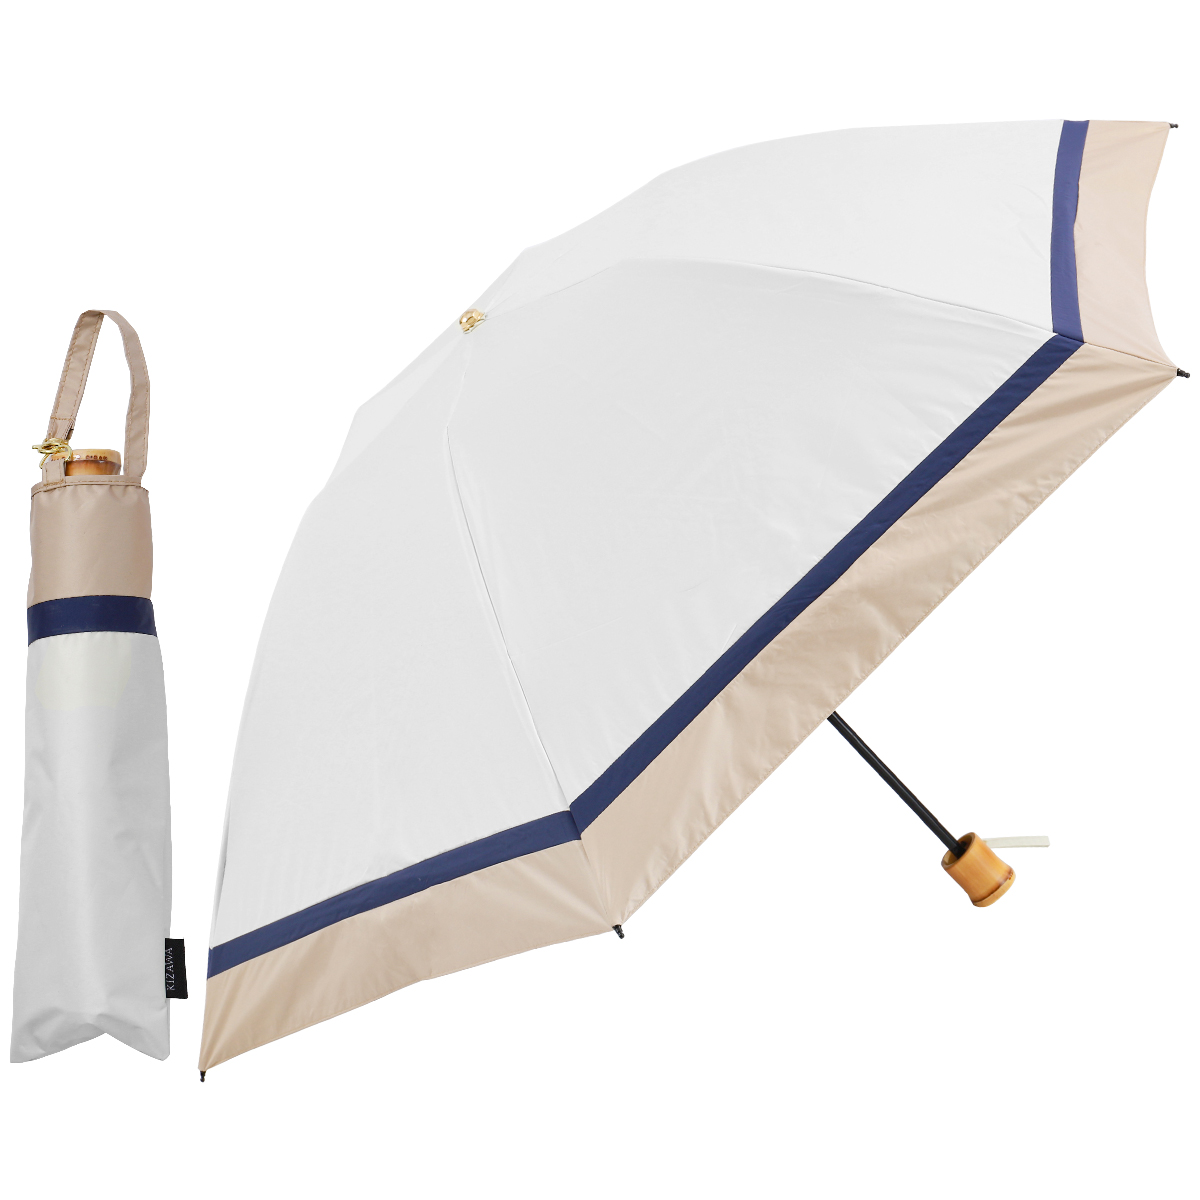  コンパクト 折りたたみ傘 晴雨兼用 UVカット 日傘 遮光